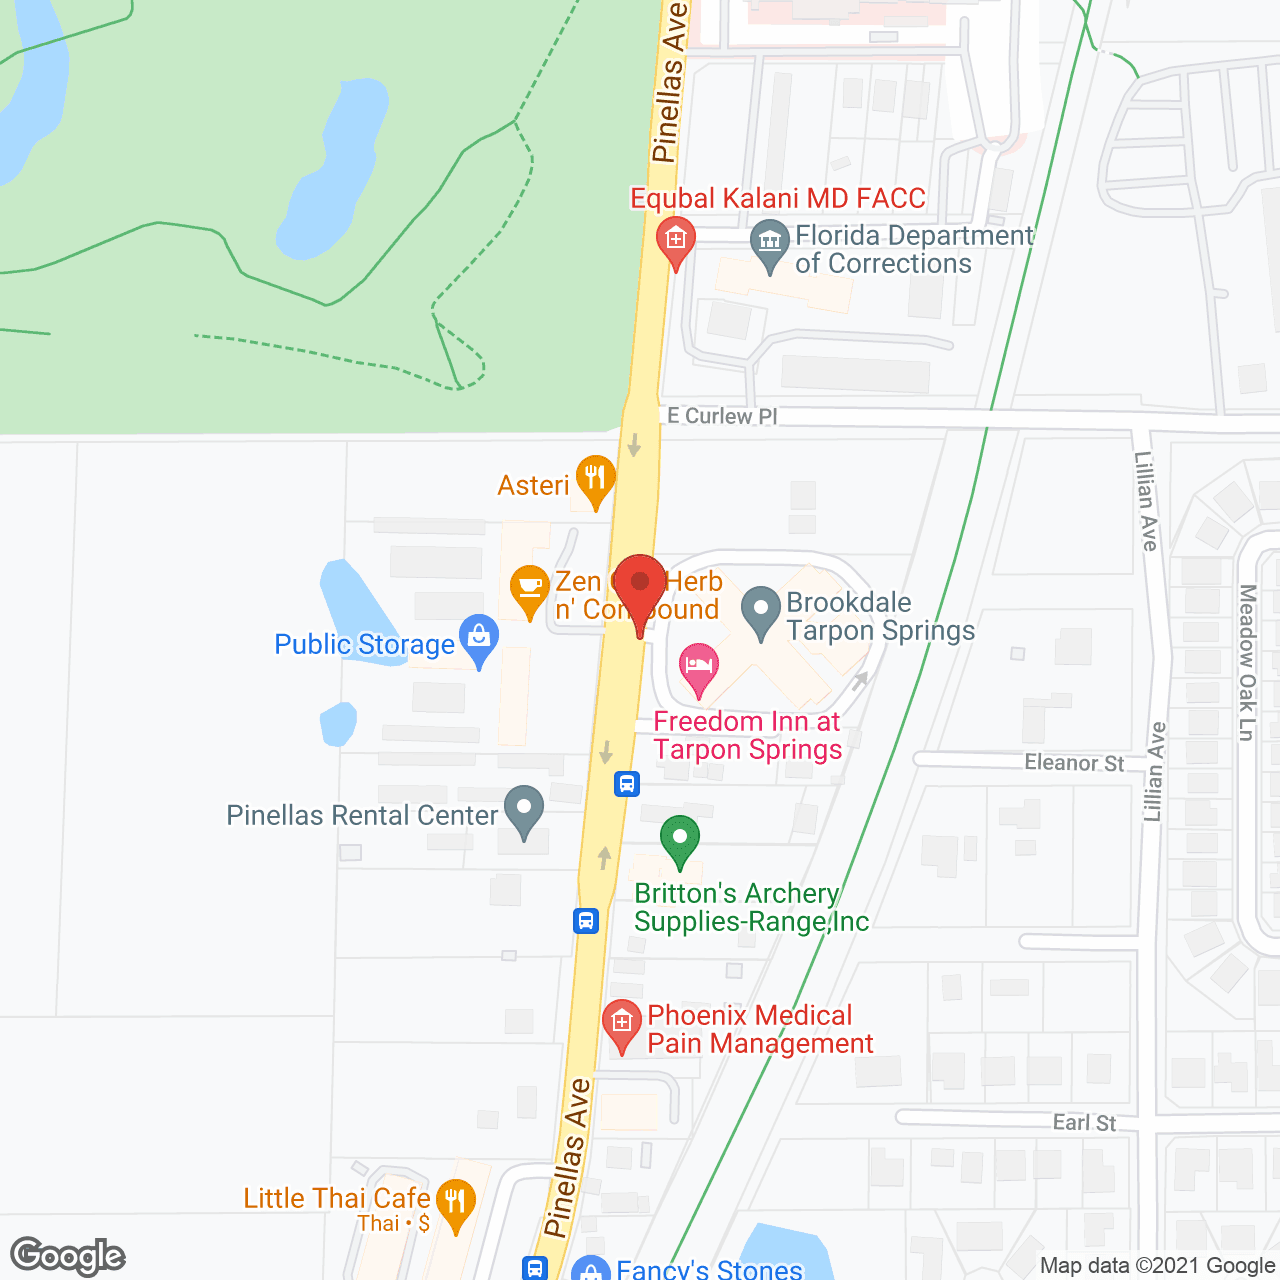 Brookdale Tarpon Springs in google map